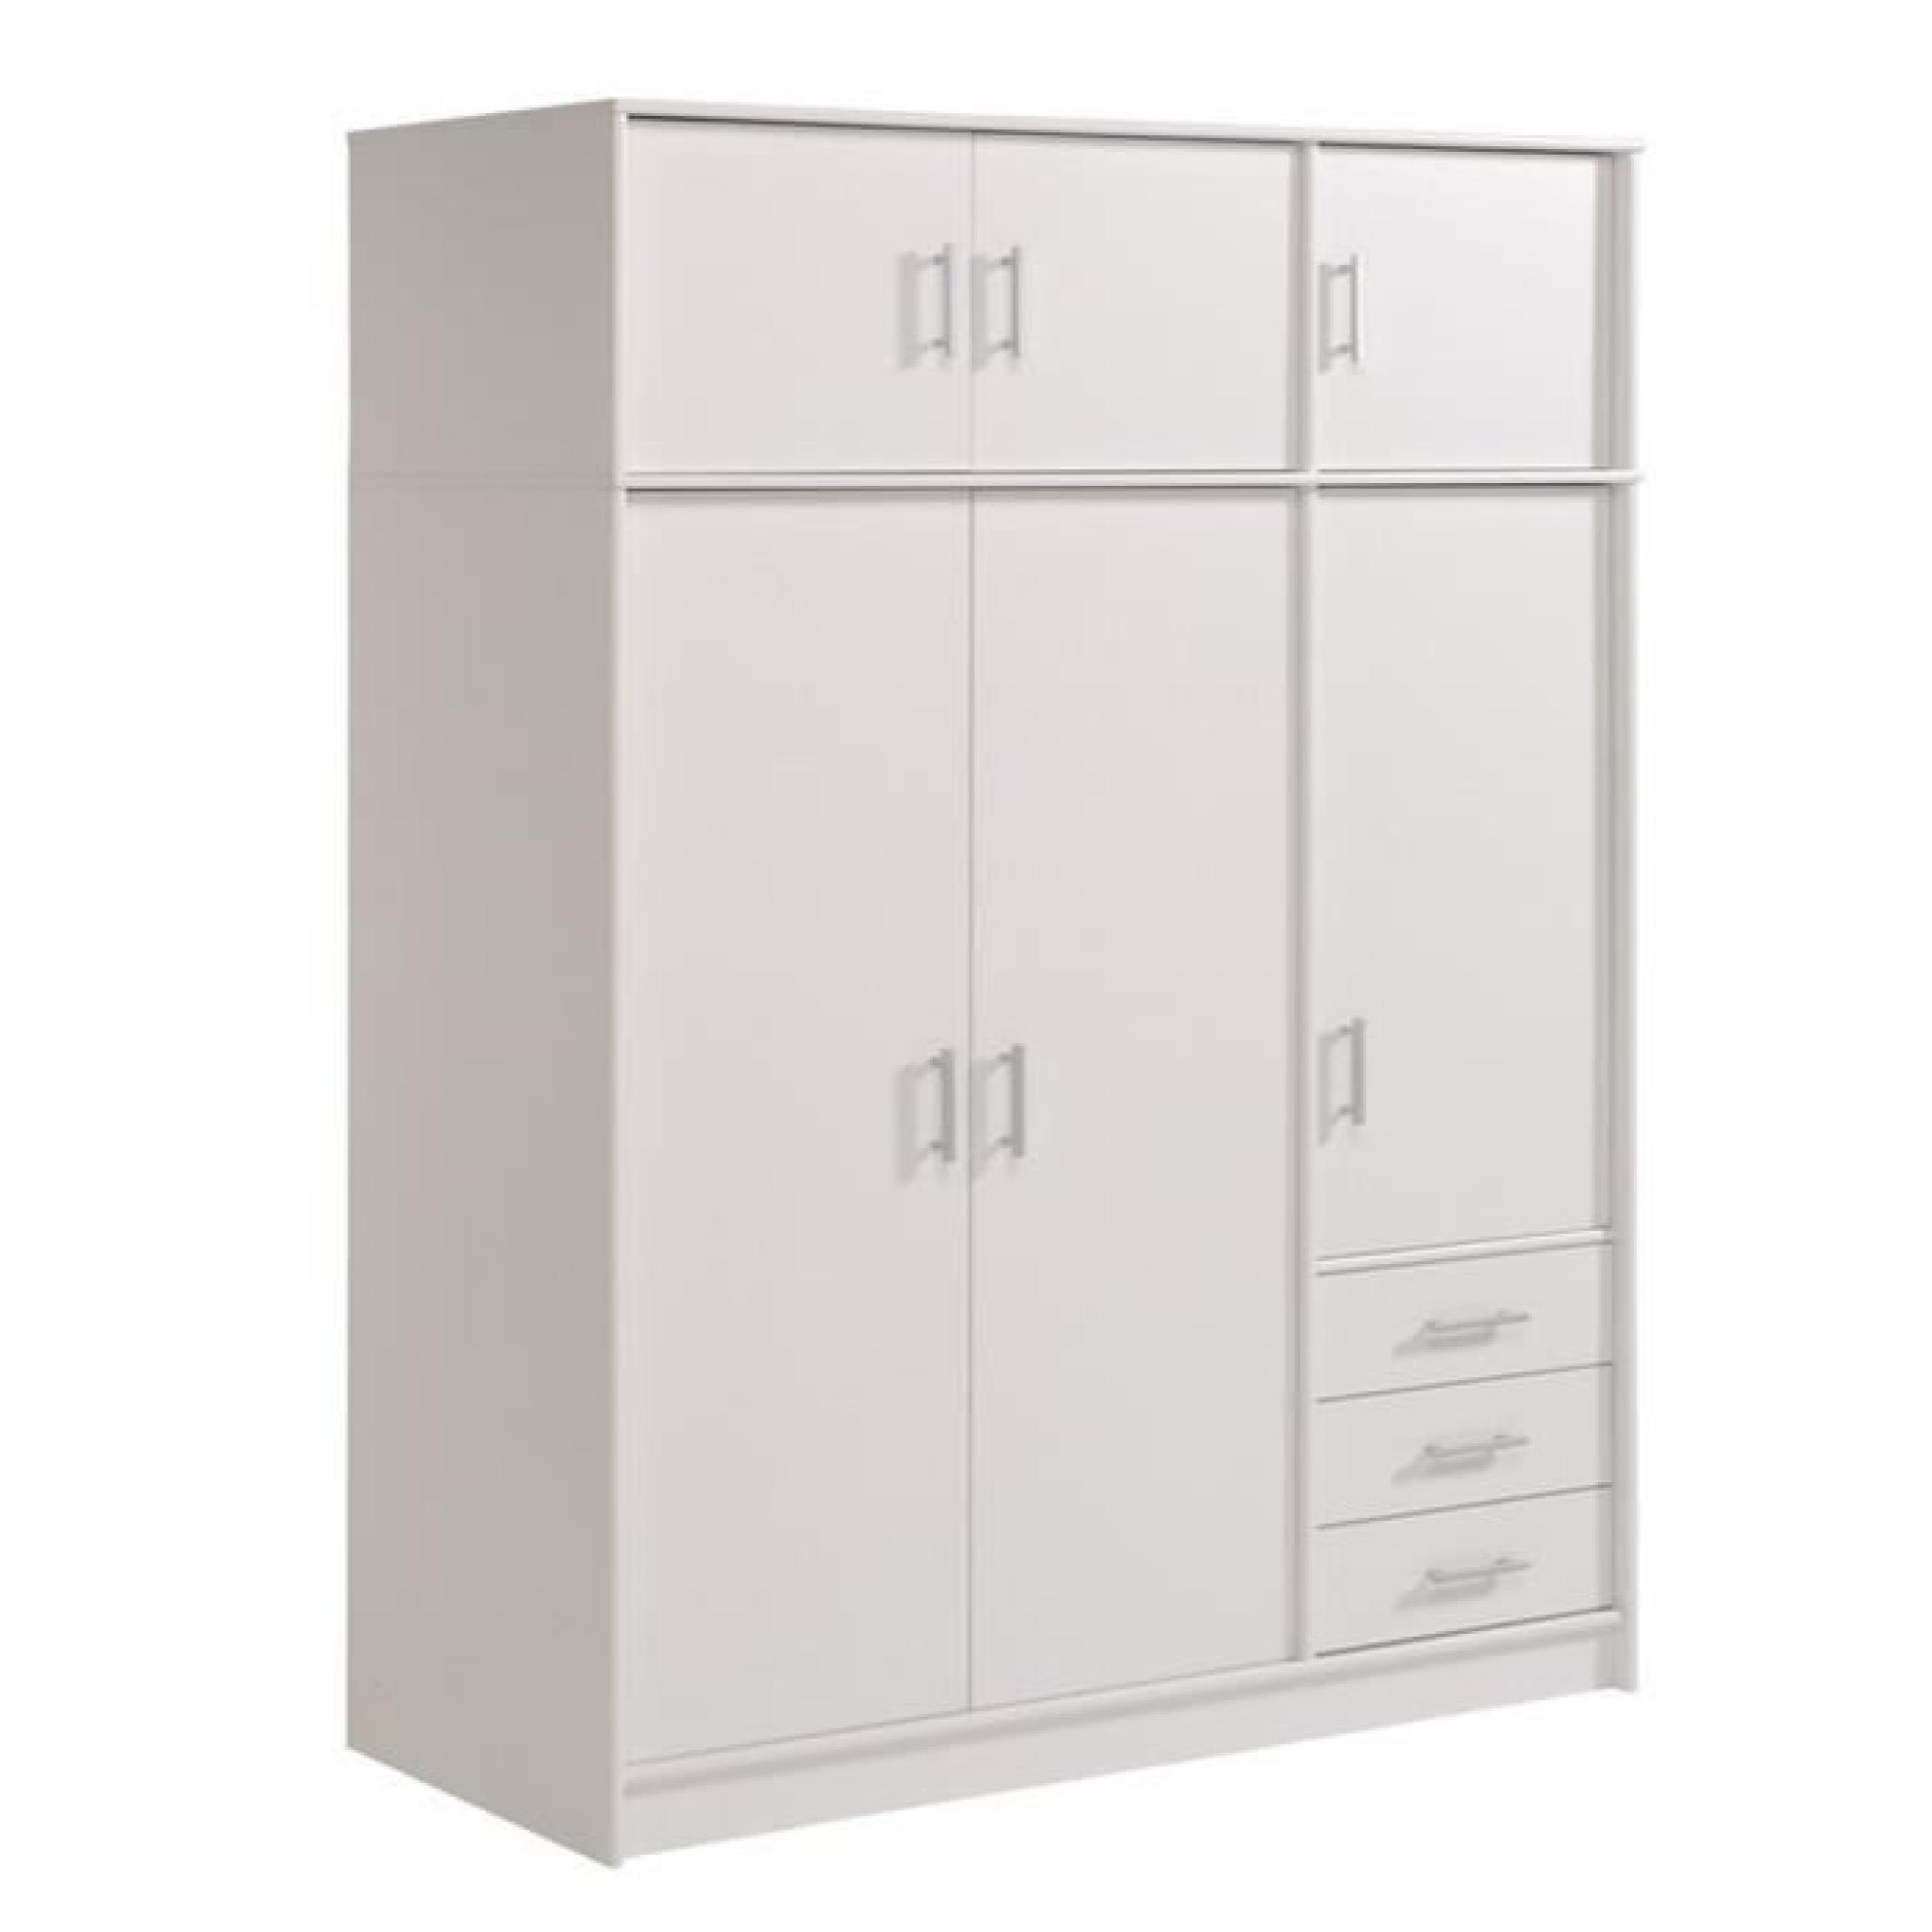 Armoire avec 6 portes et 3 tiroirs coloris Blanc megève, H 195 x L 130 x P 55 cm